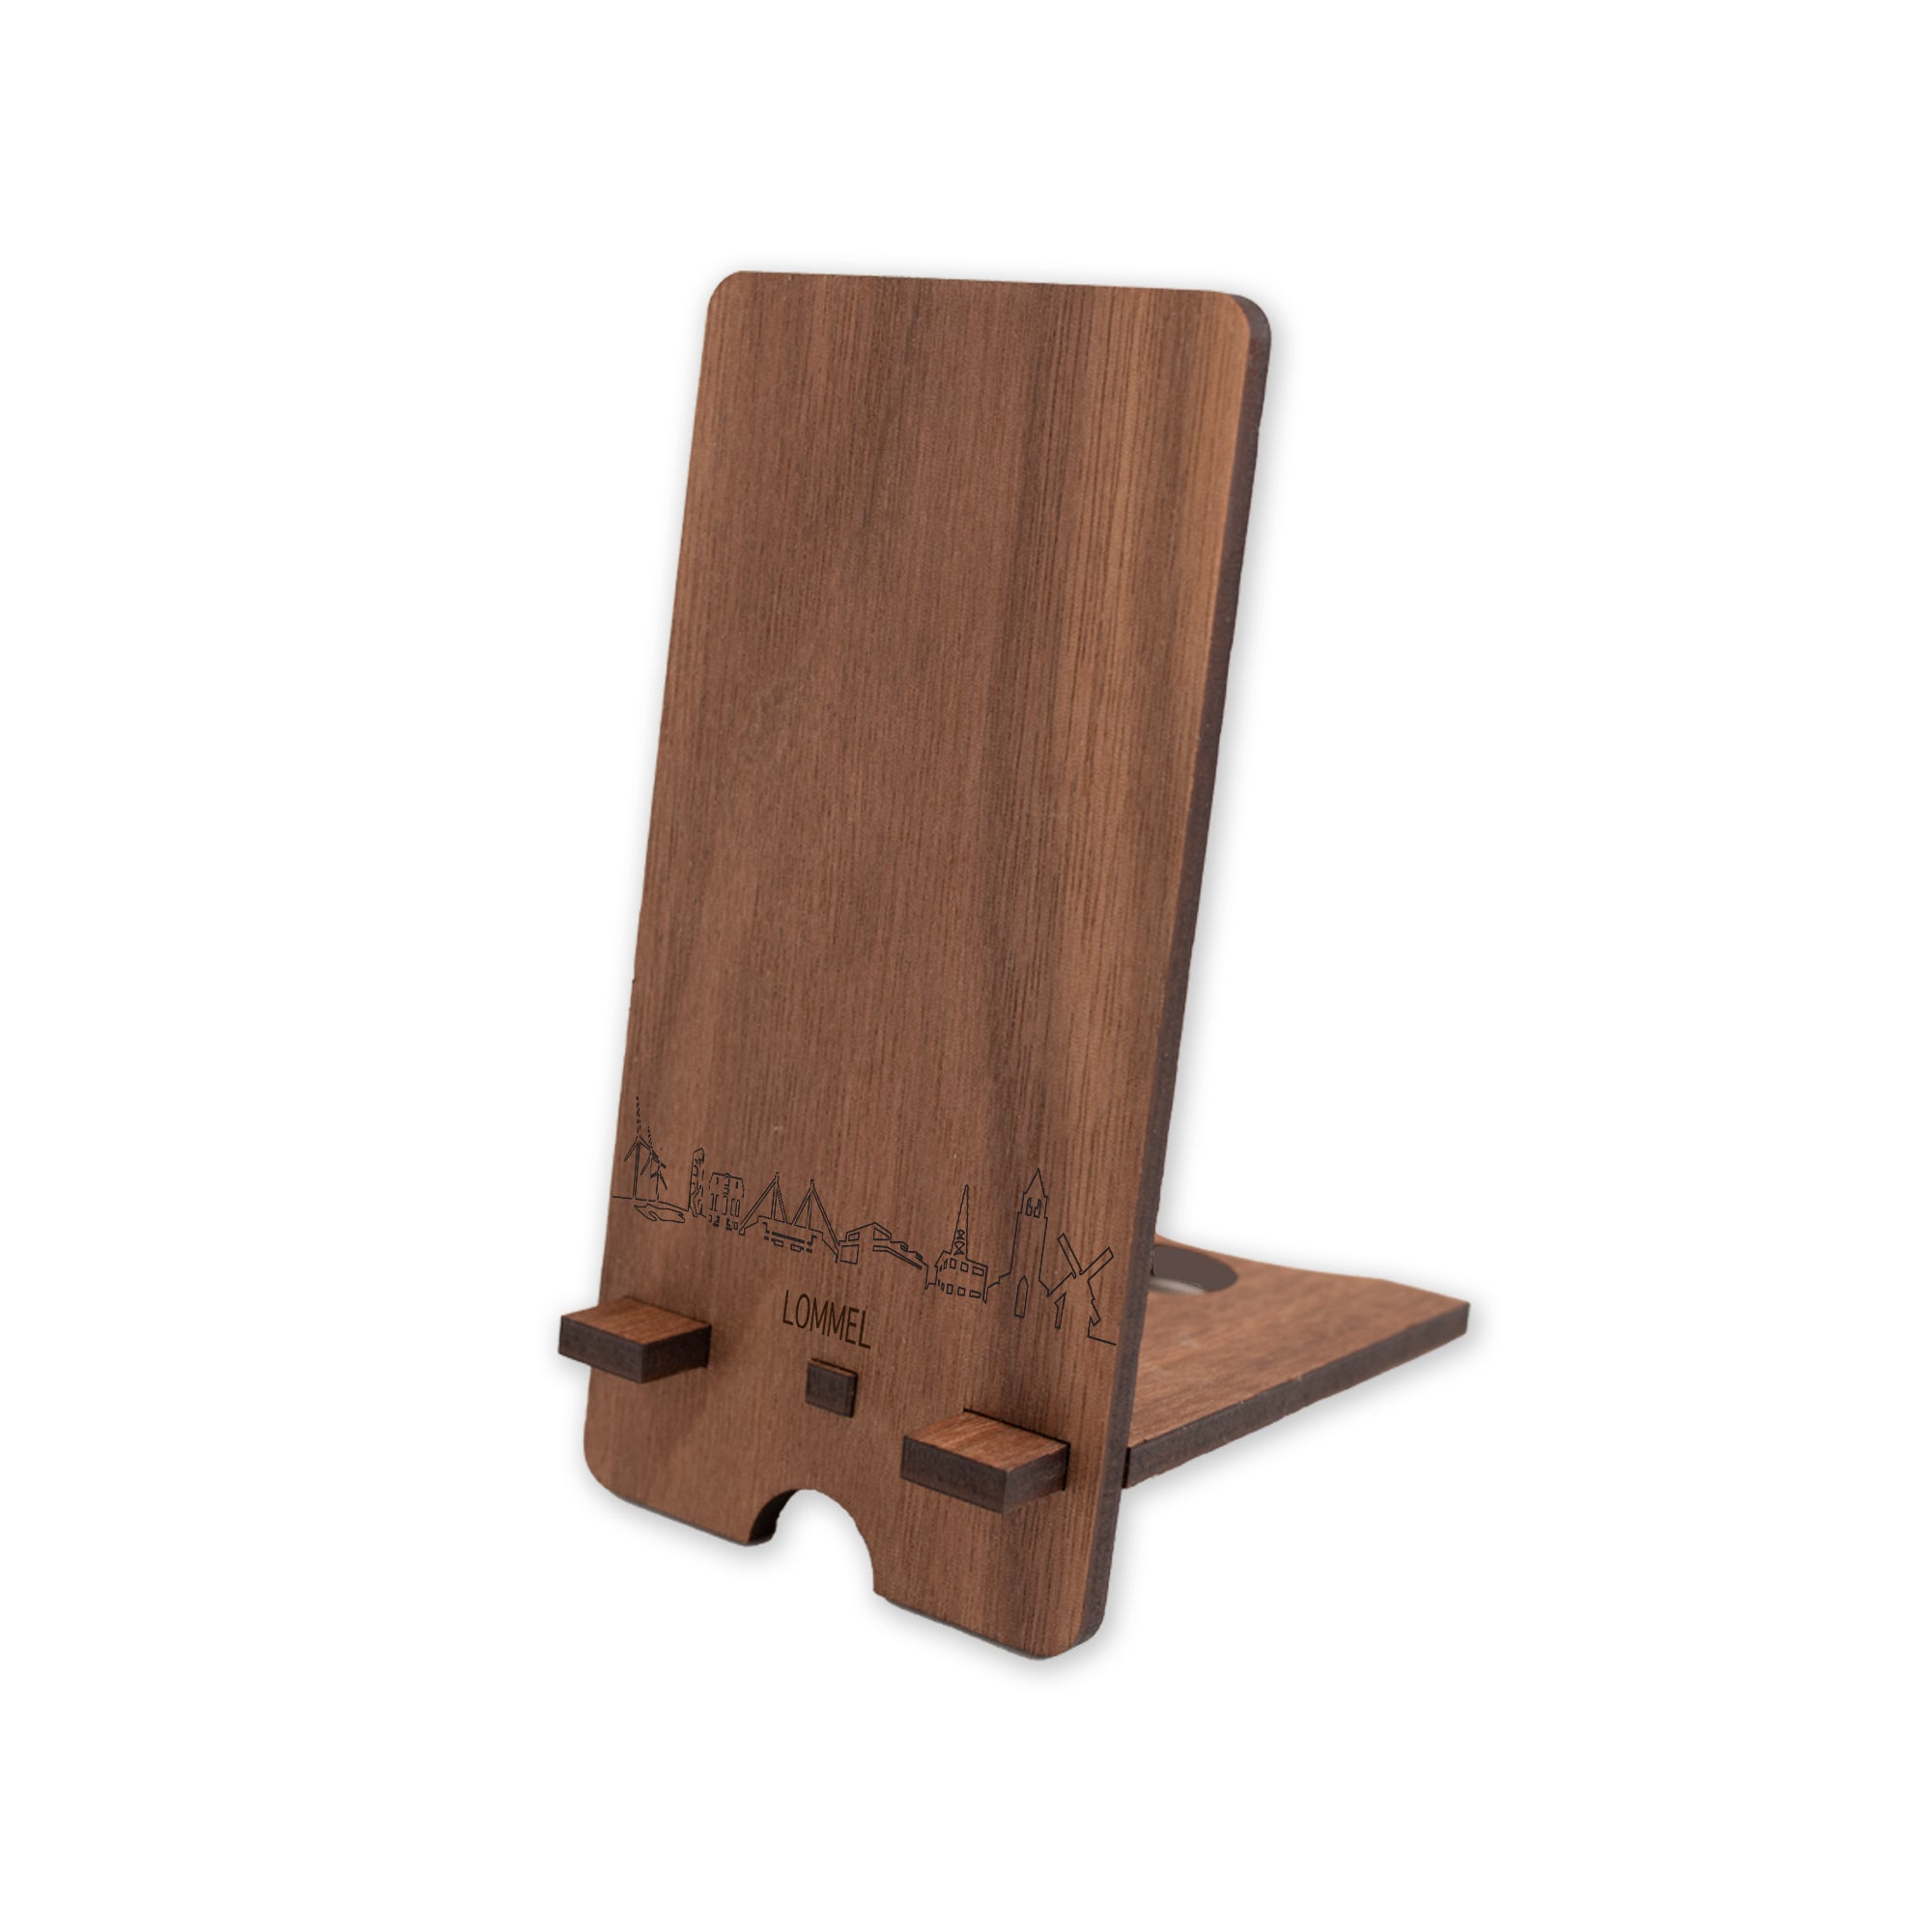 Skyline Telefoonhouder Lommel houten cadeau decoratie relatiegeschenk van WoodWideCities